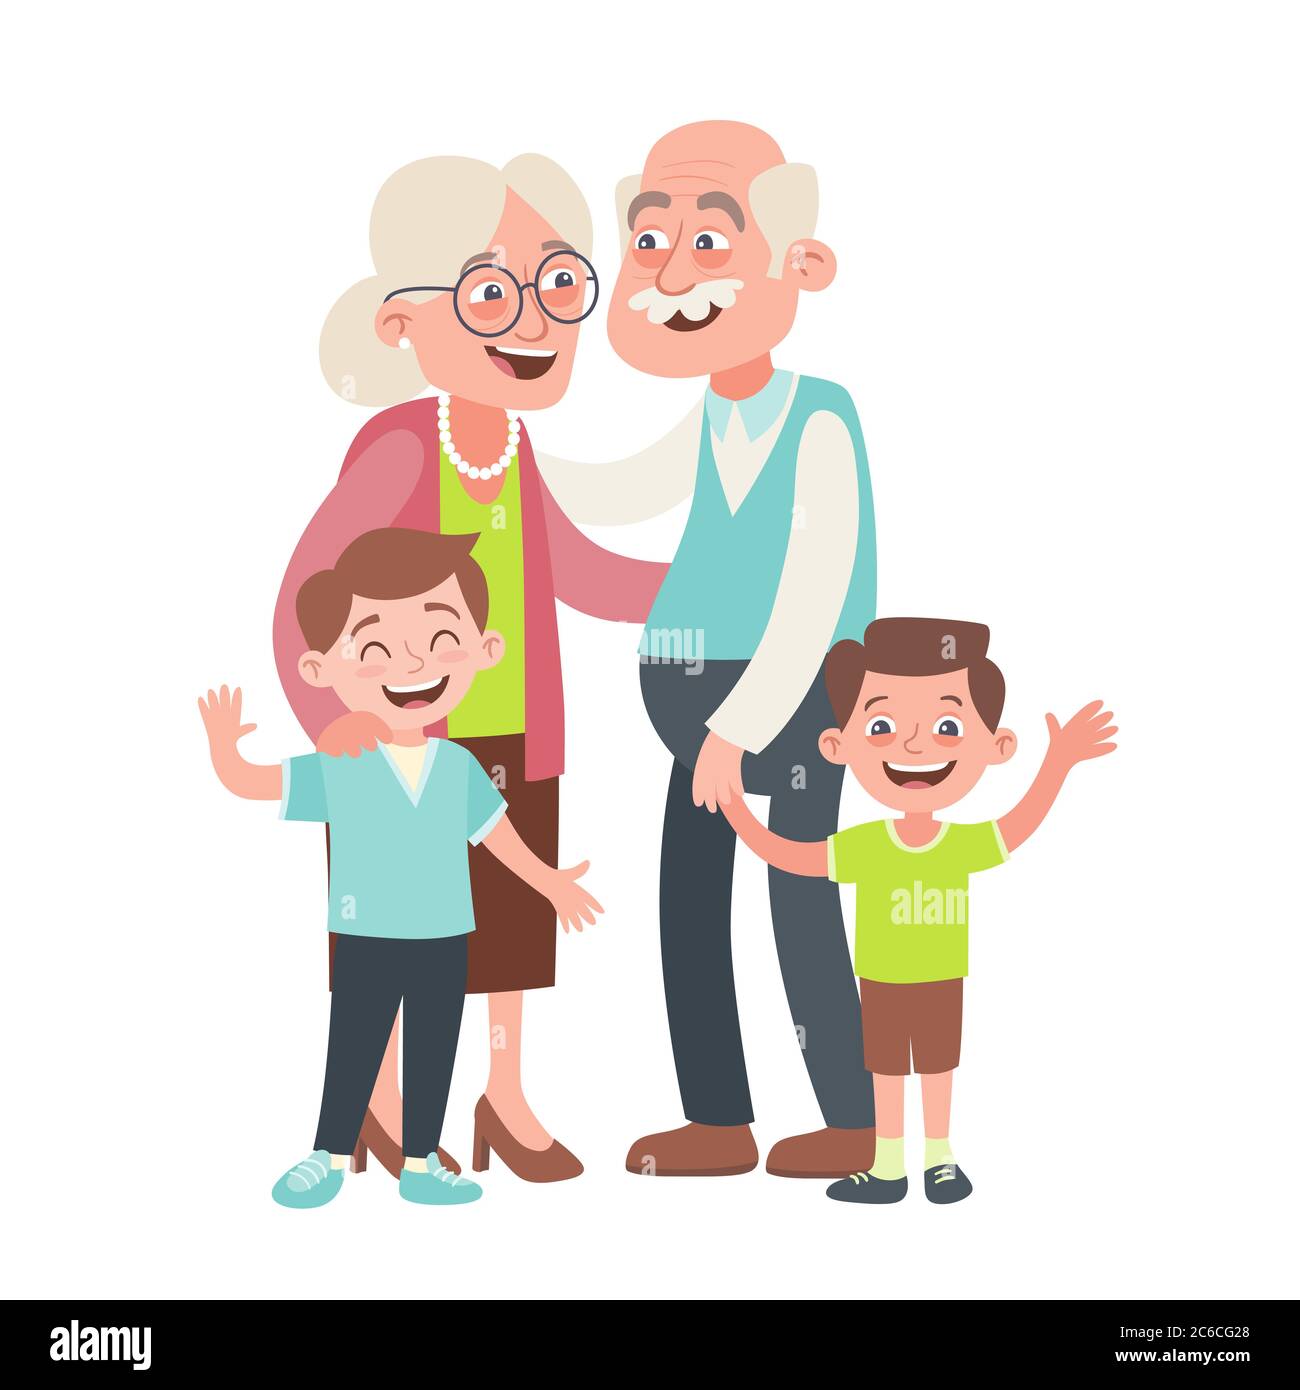 Portrait des grands-parents et de deux petits-enfants. Concept de la fête des grands-parents heureux. Illustration vectorielle de style dessin animé, isolée sur fond blanc. Illustration de Vecteur